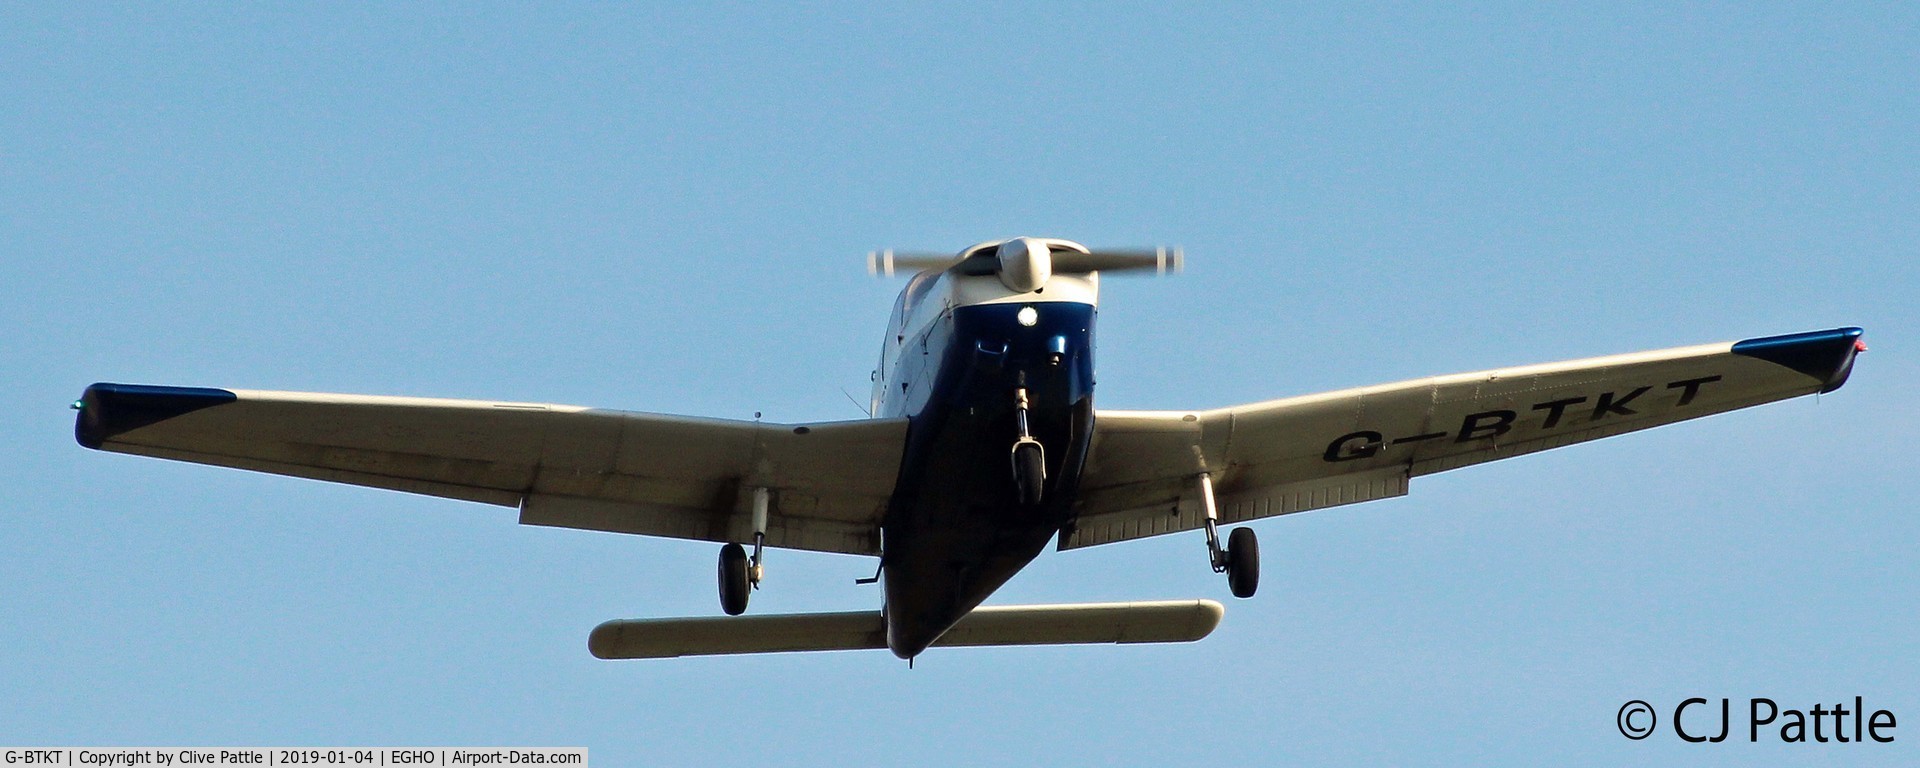 G-BTKT, 1982 Piper PA-28-161 Cherokee Warrior II C/N 28-8216218, Take off @ Thruxton